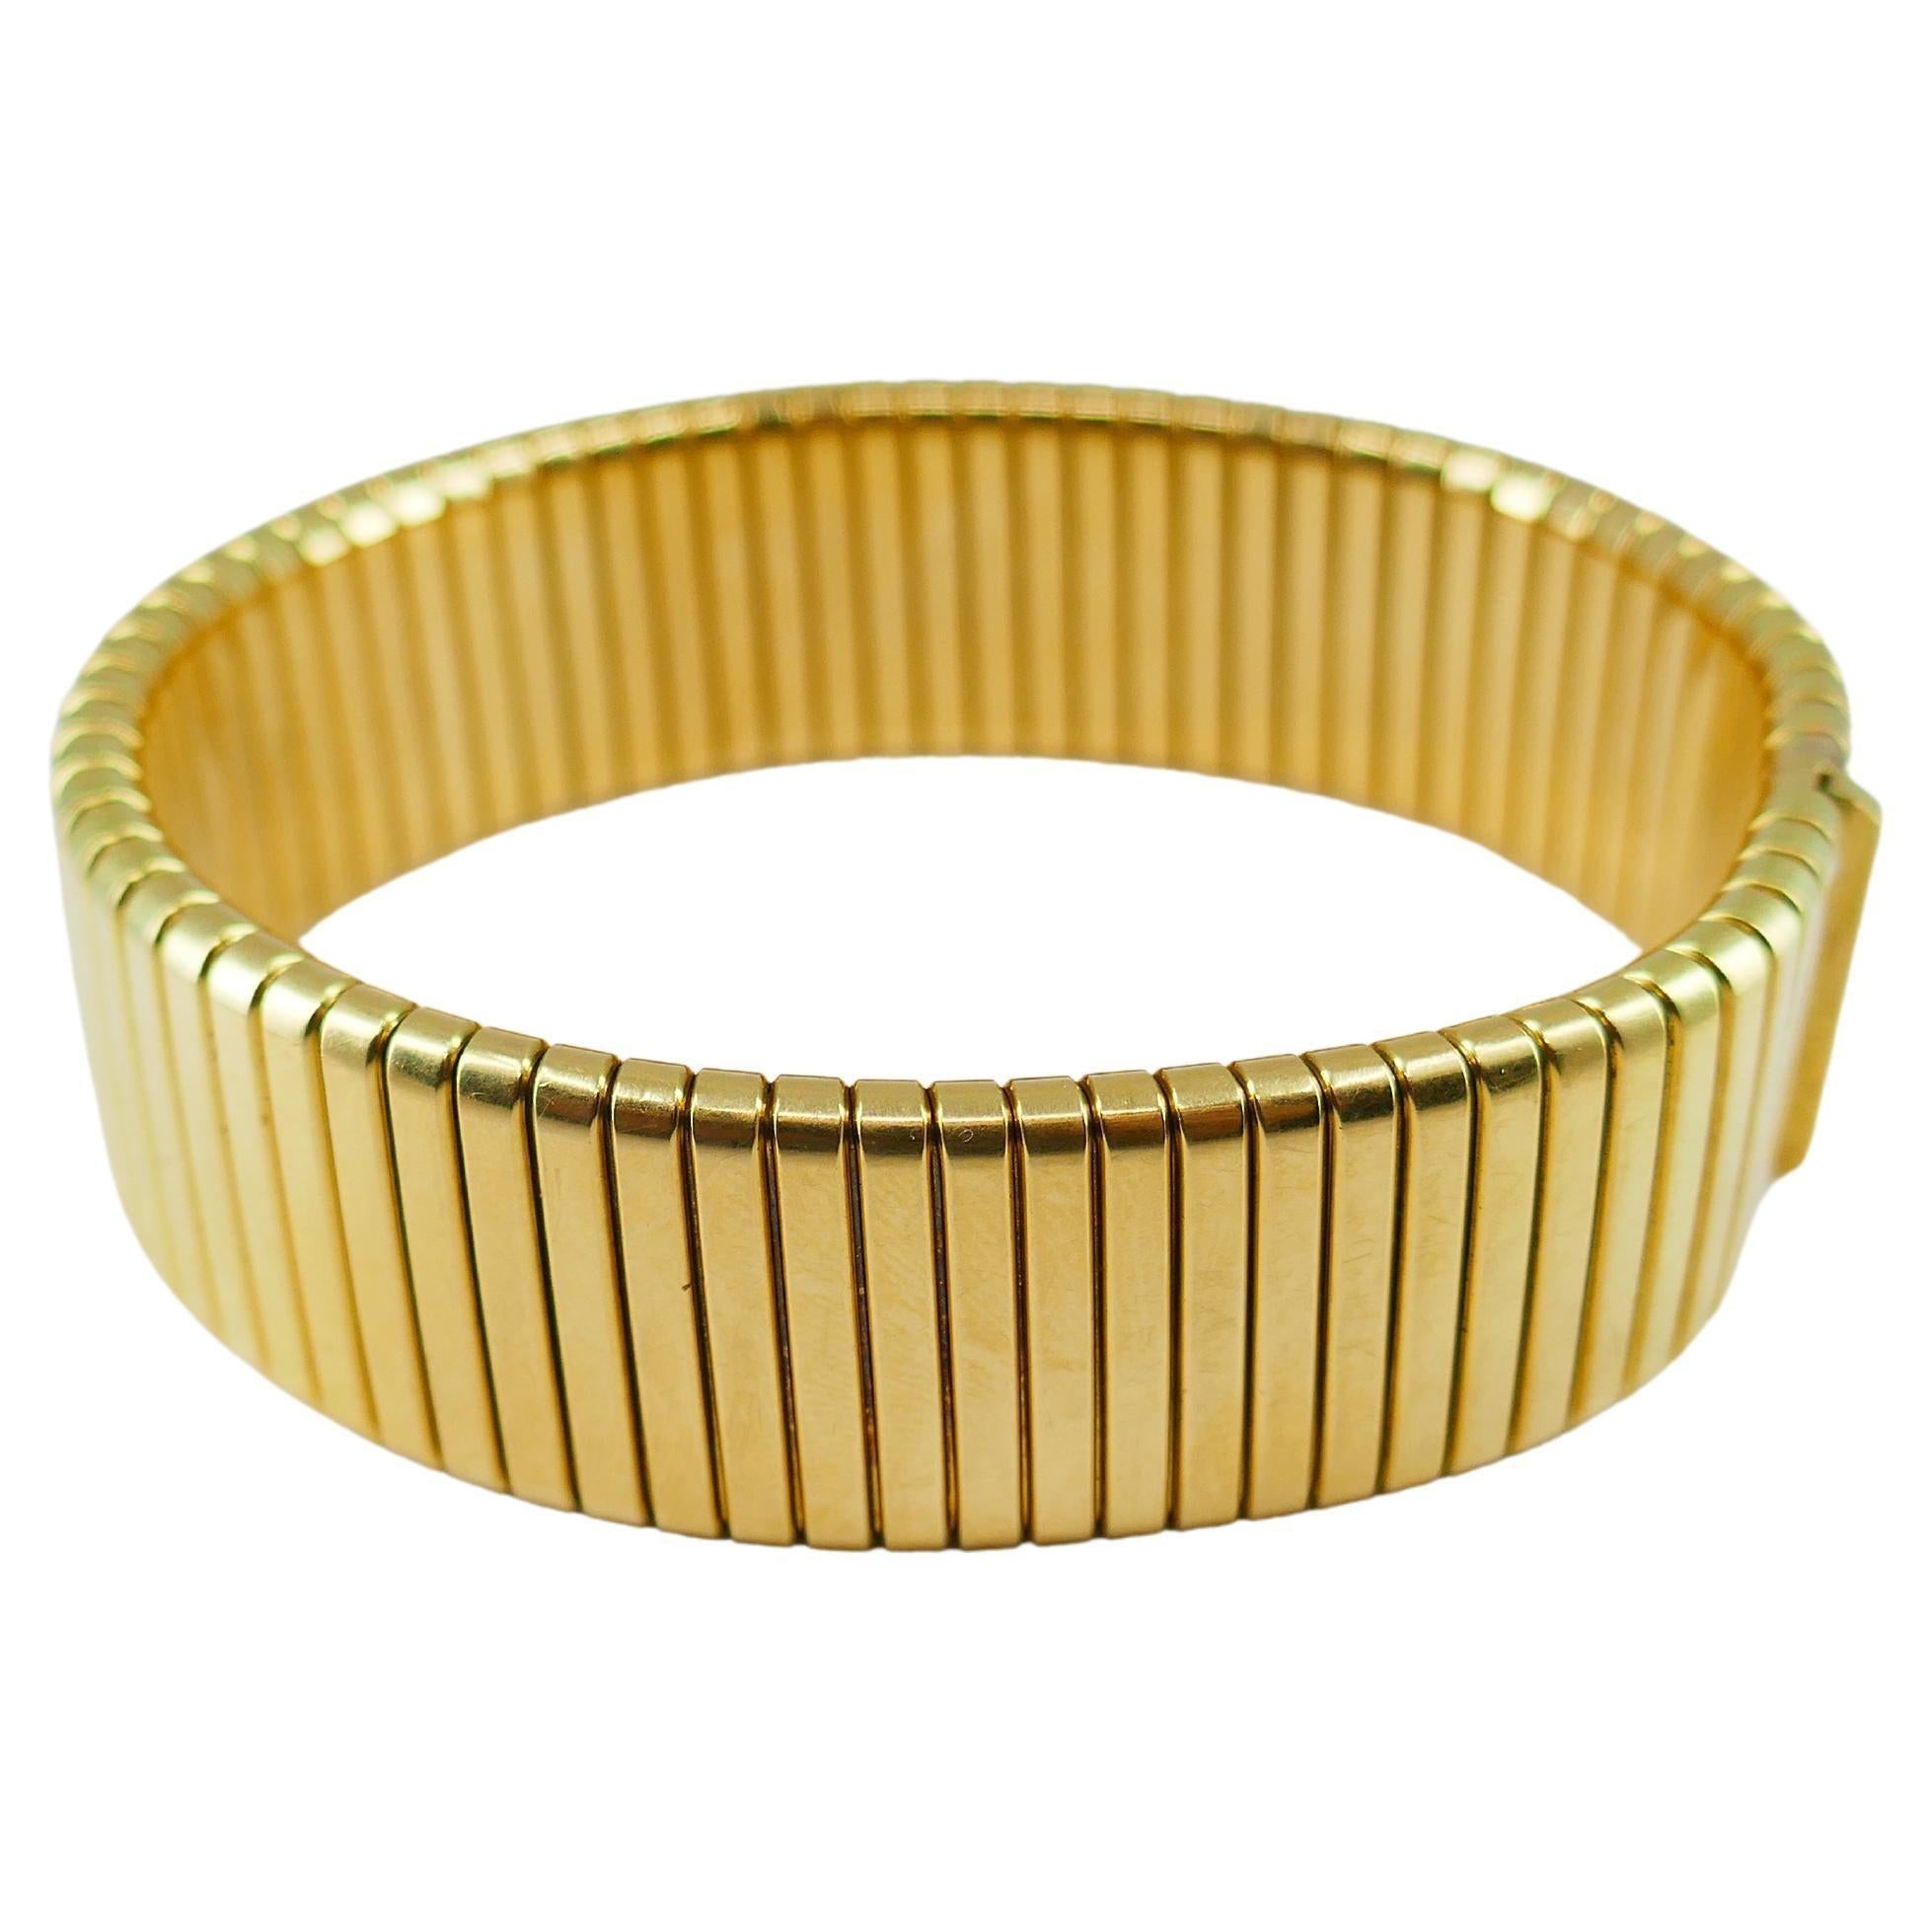 Un superbe bracelet Tubogas vintage en or 18 carats.
Le bracelet est élégant et classique. Il a une forme rectangulaire avec des bords légèrement arrondis. La géométrie du bracelet est parfaite ; la largeur des lignes verticales s'accorde bien avec